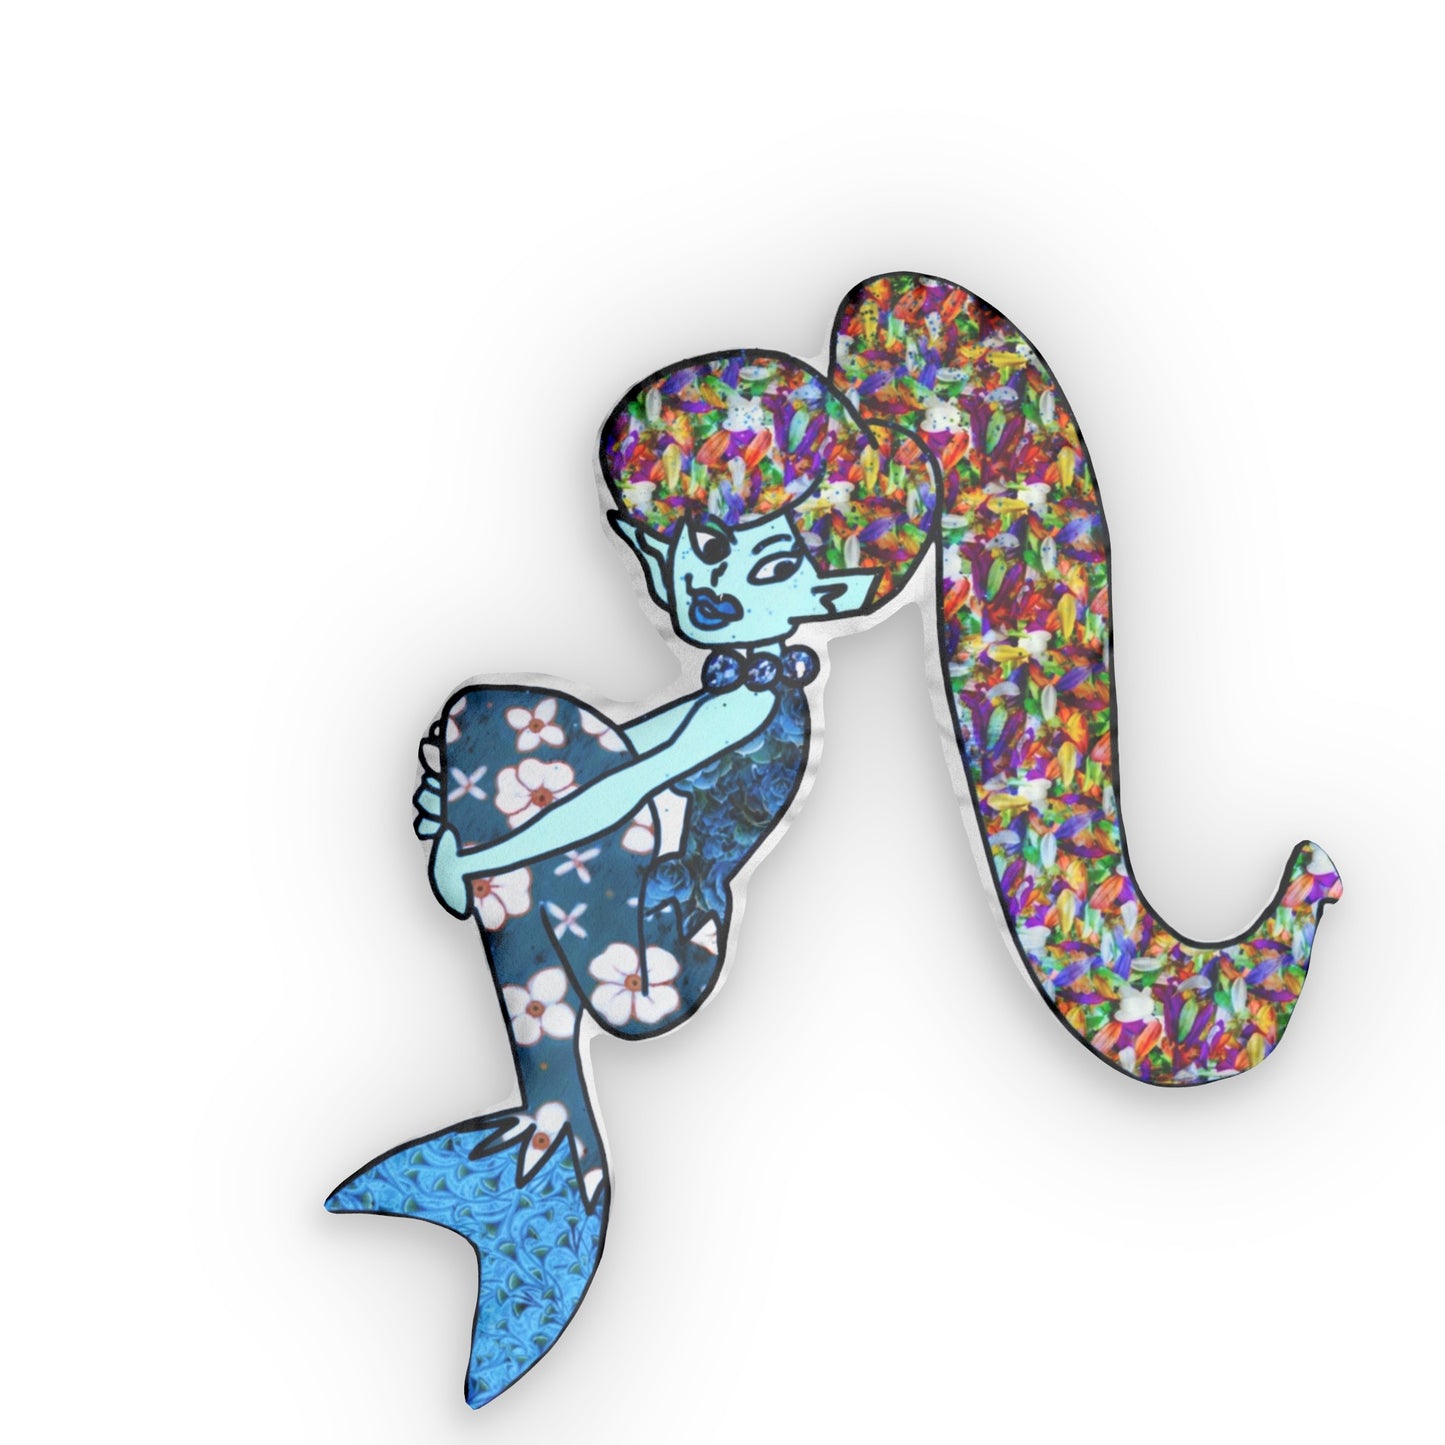 Mermaid art custom shaped